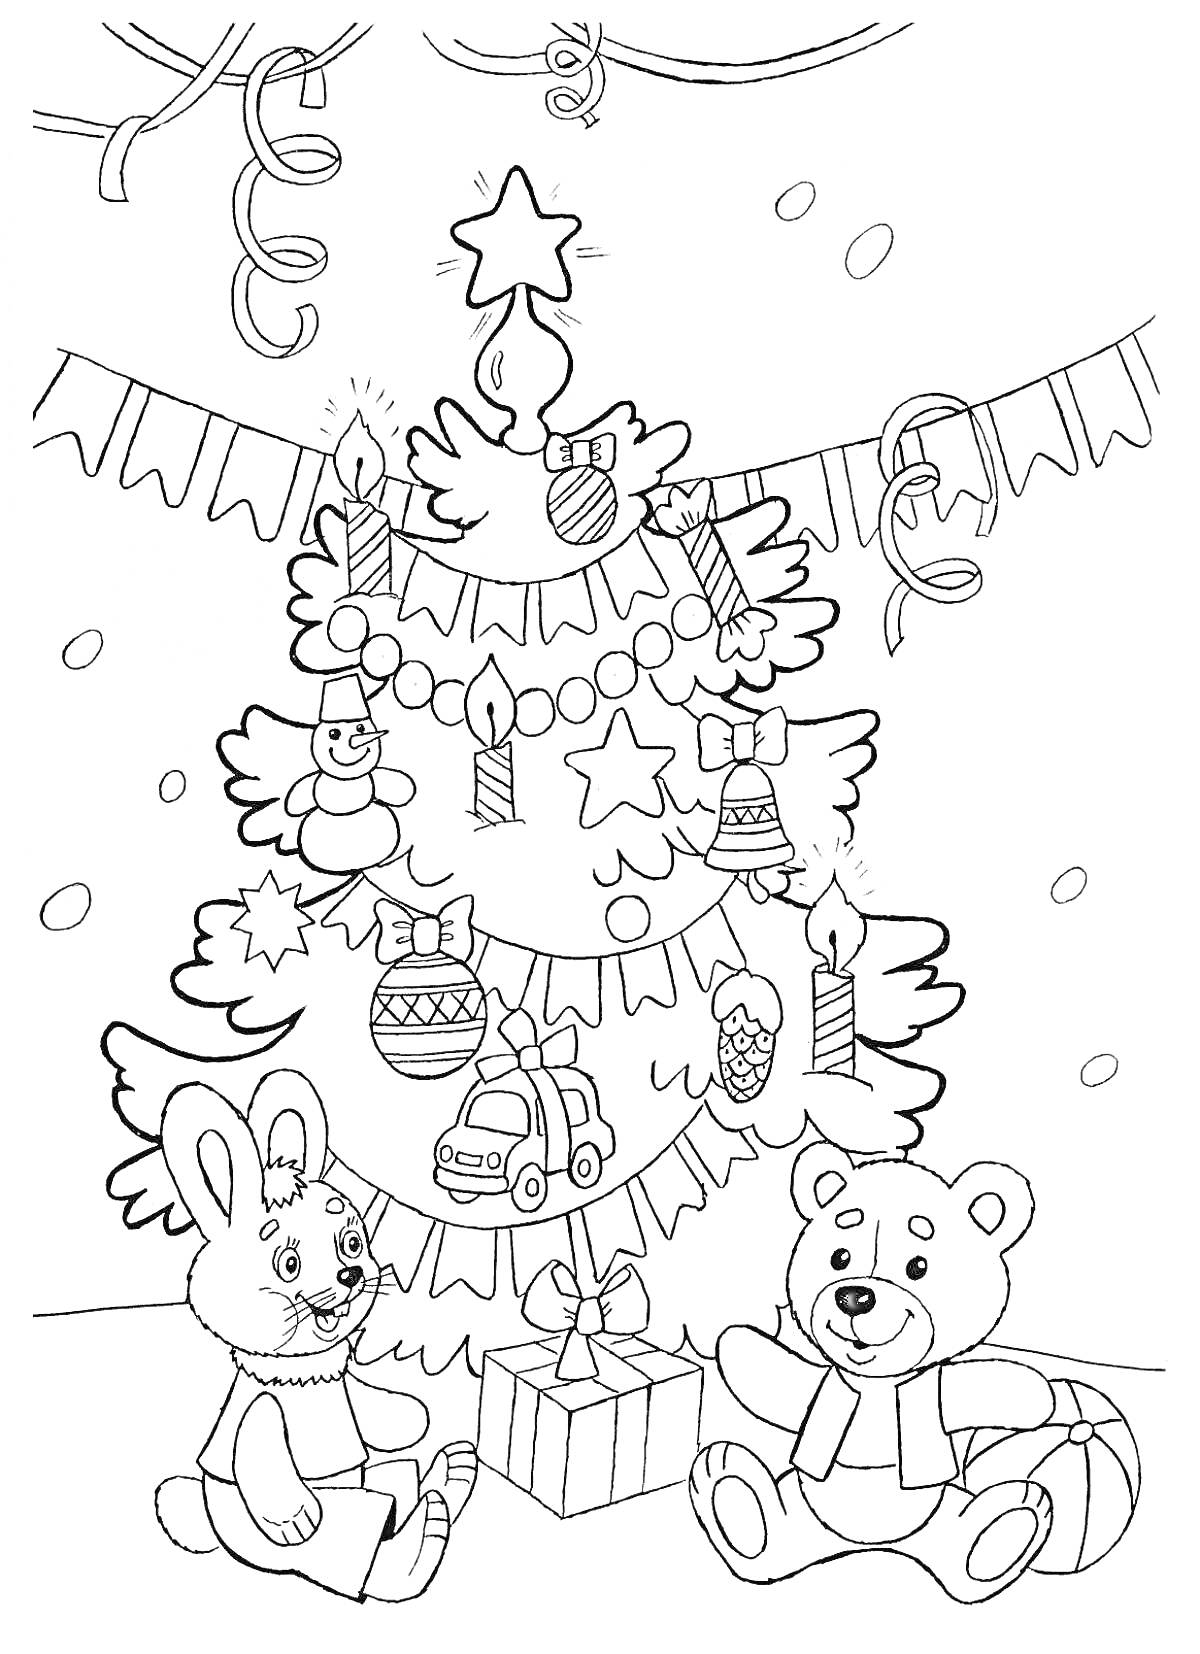 Раскраска Новогодняя елка с игрушками, свечами и подарками, на фоне флажков и серпантина. Рядом с елкой сидят кролик и медвежонок.